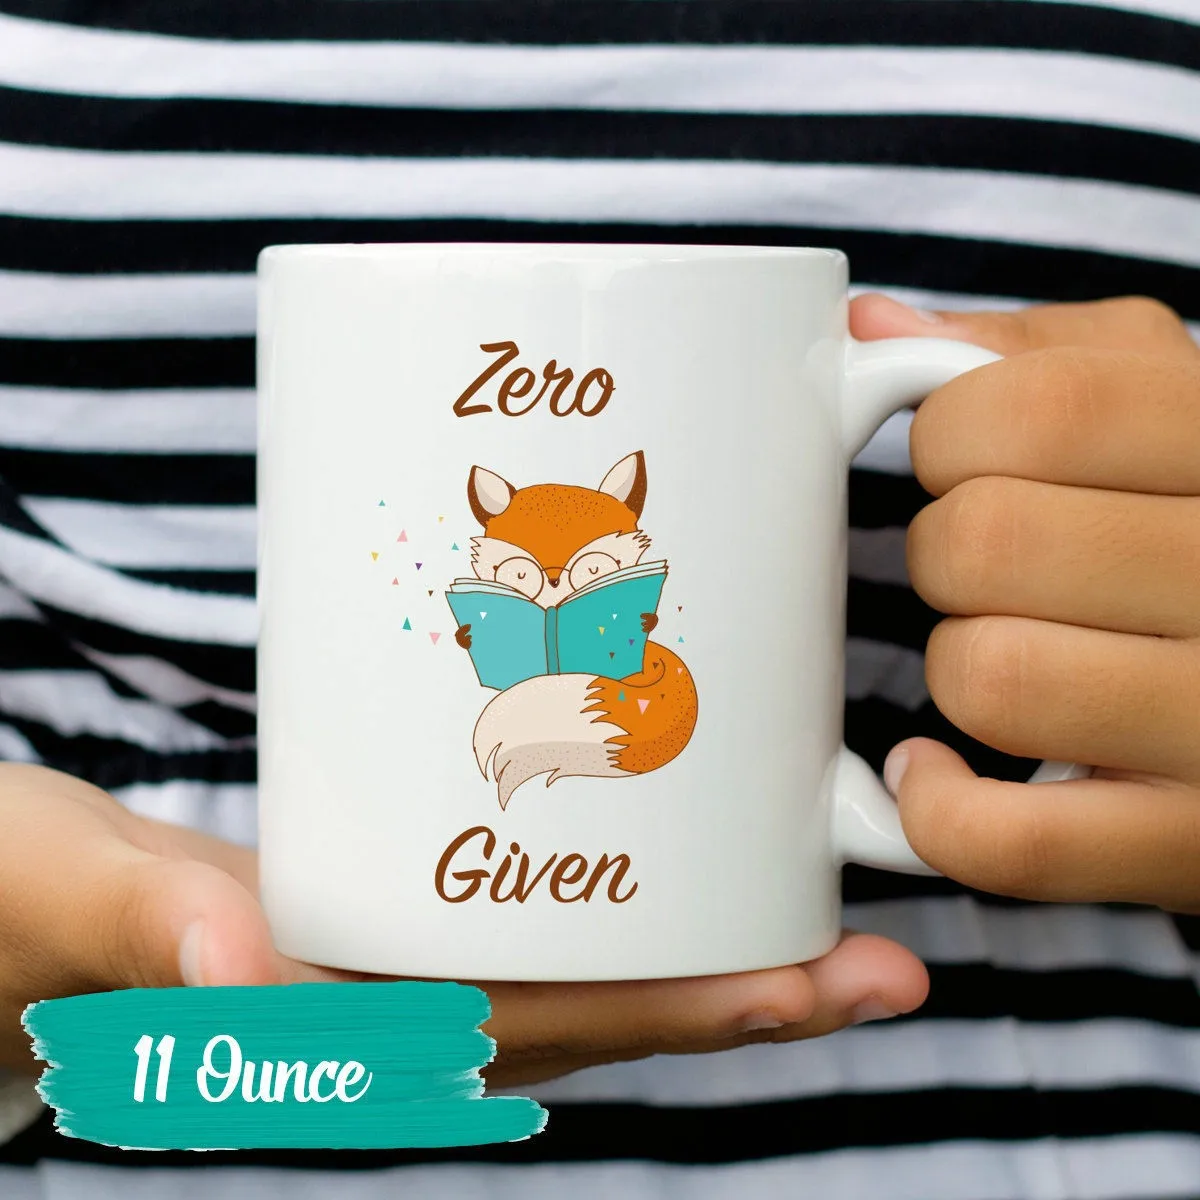 Zero Fox дан кофе кружка Смешные лисьи кружки для коллега подарок Clever Веселые подарки чашки